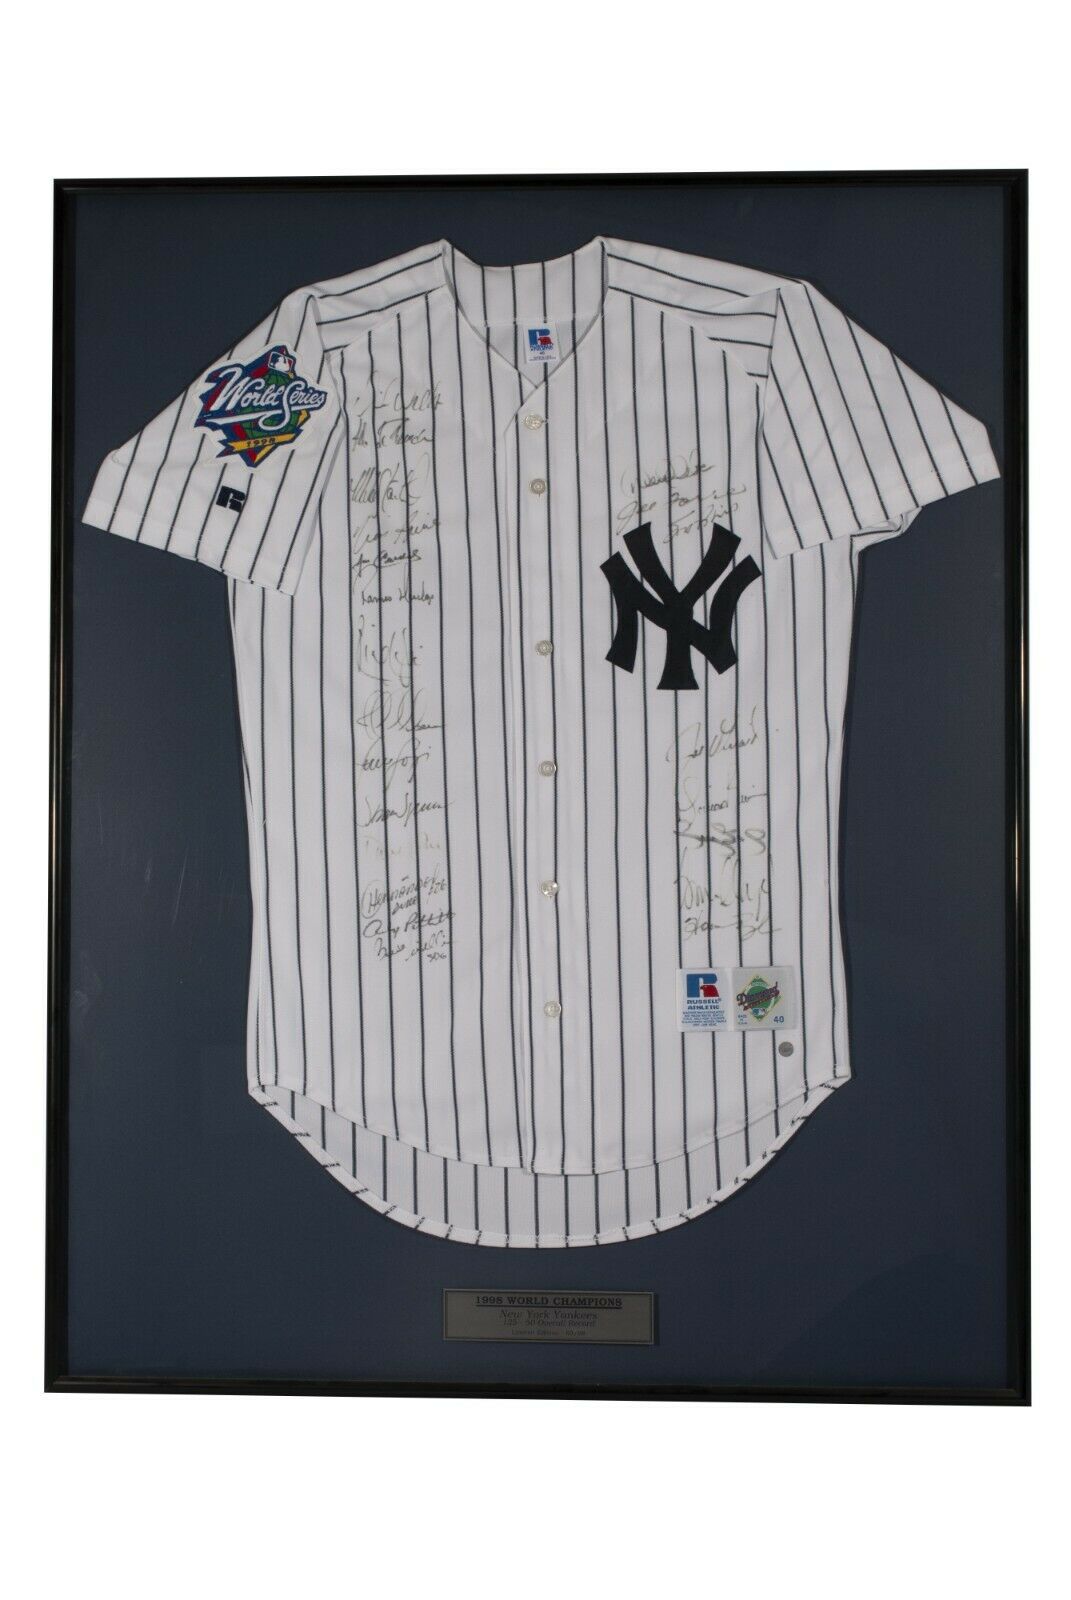 New York Yankees Team Shop 